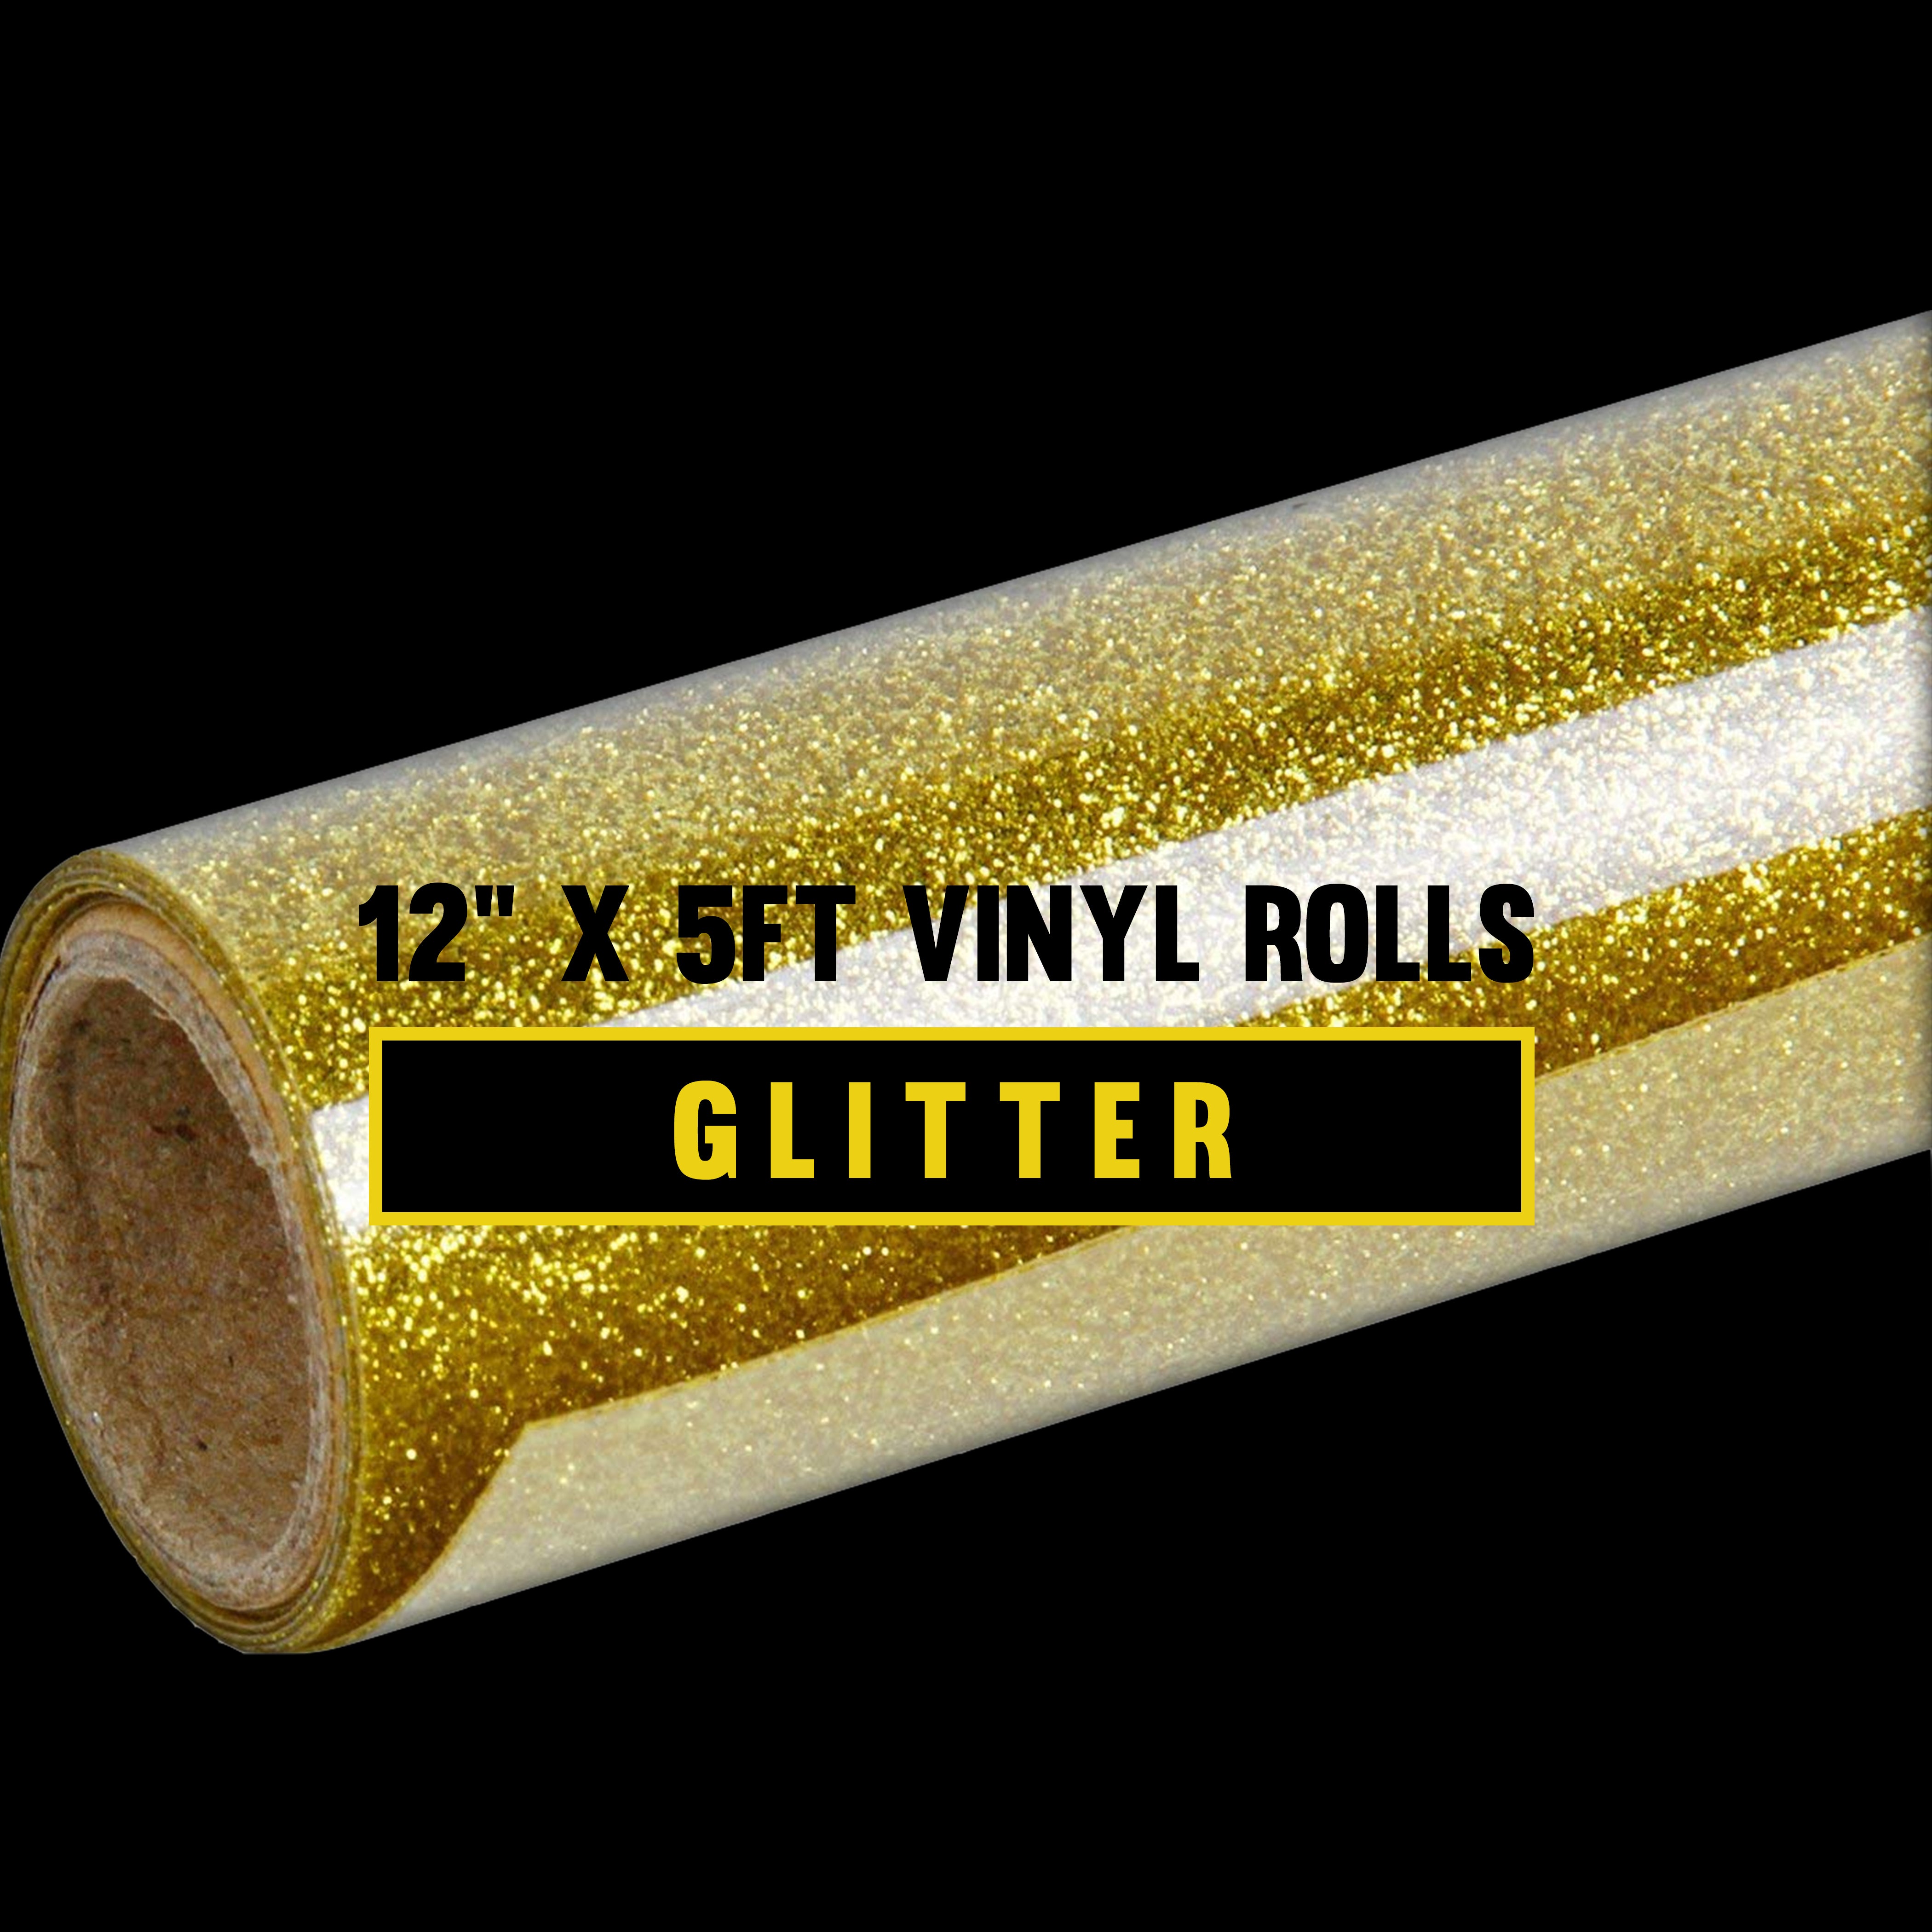 Siser Glitter Heat Transfer Vinyl 20 in x 3 ft Roll